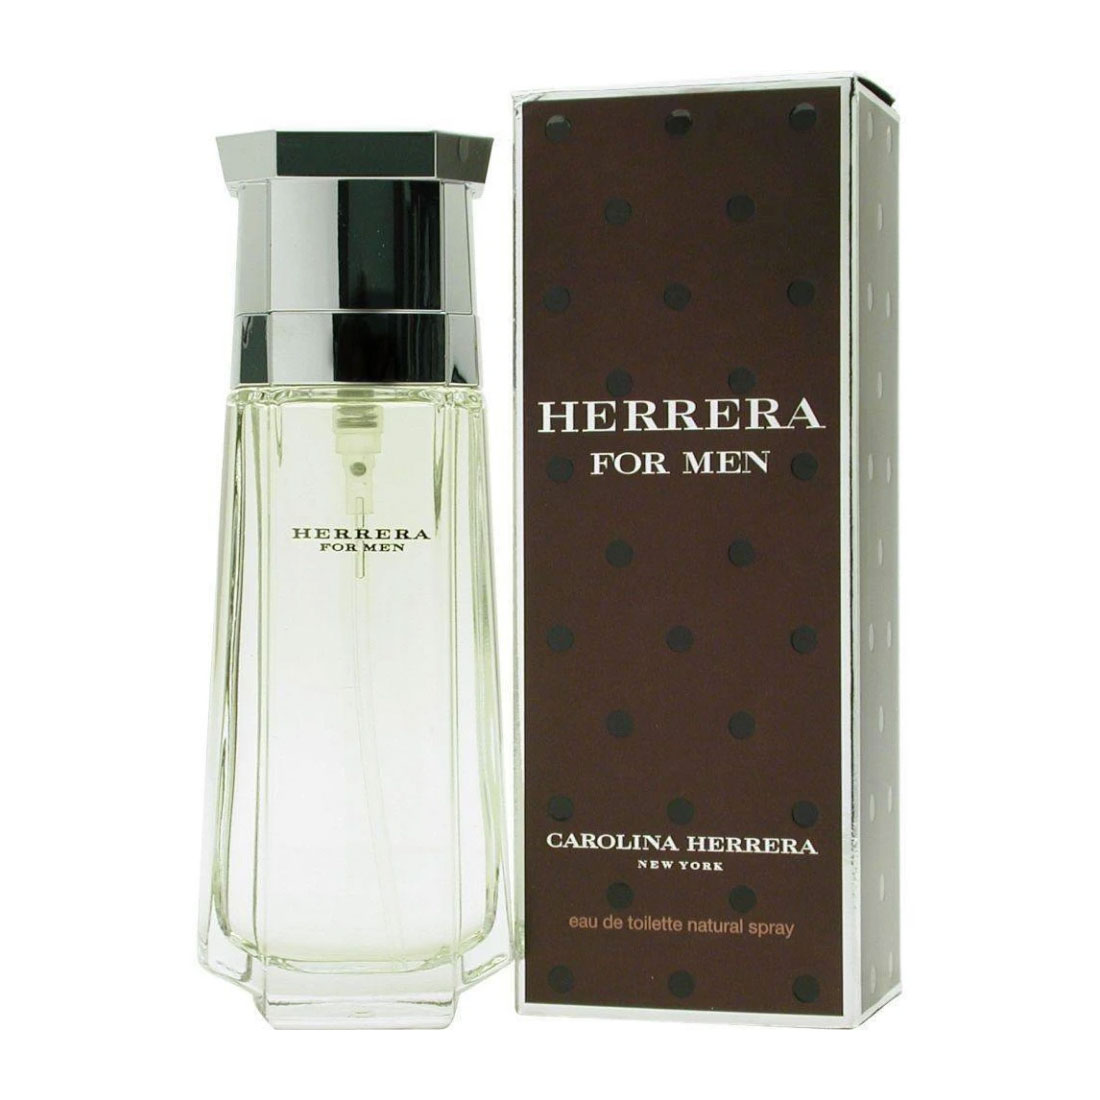 Perfume Hombre For Men Eau Toilette 200ml Carolina Herrera